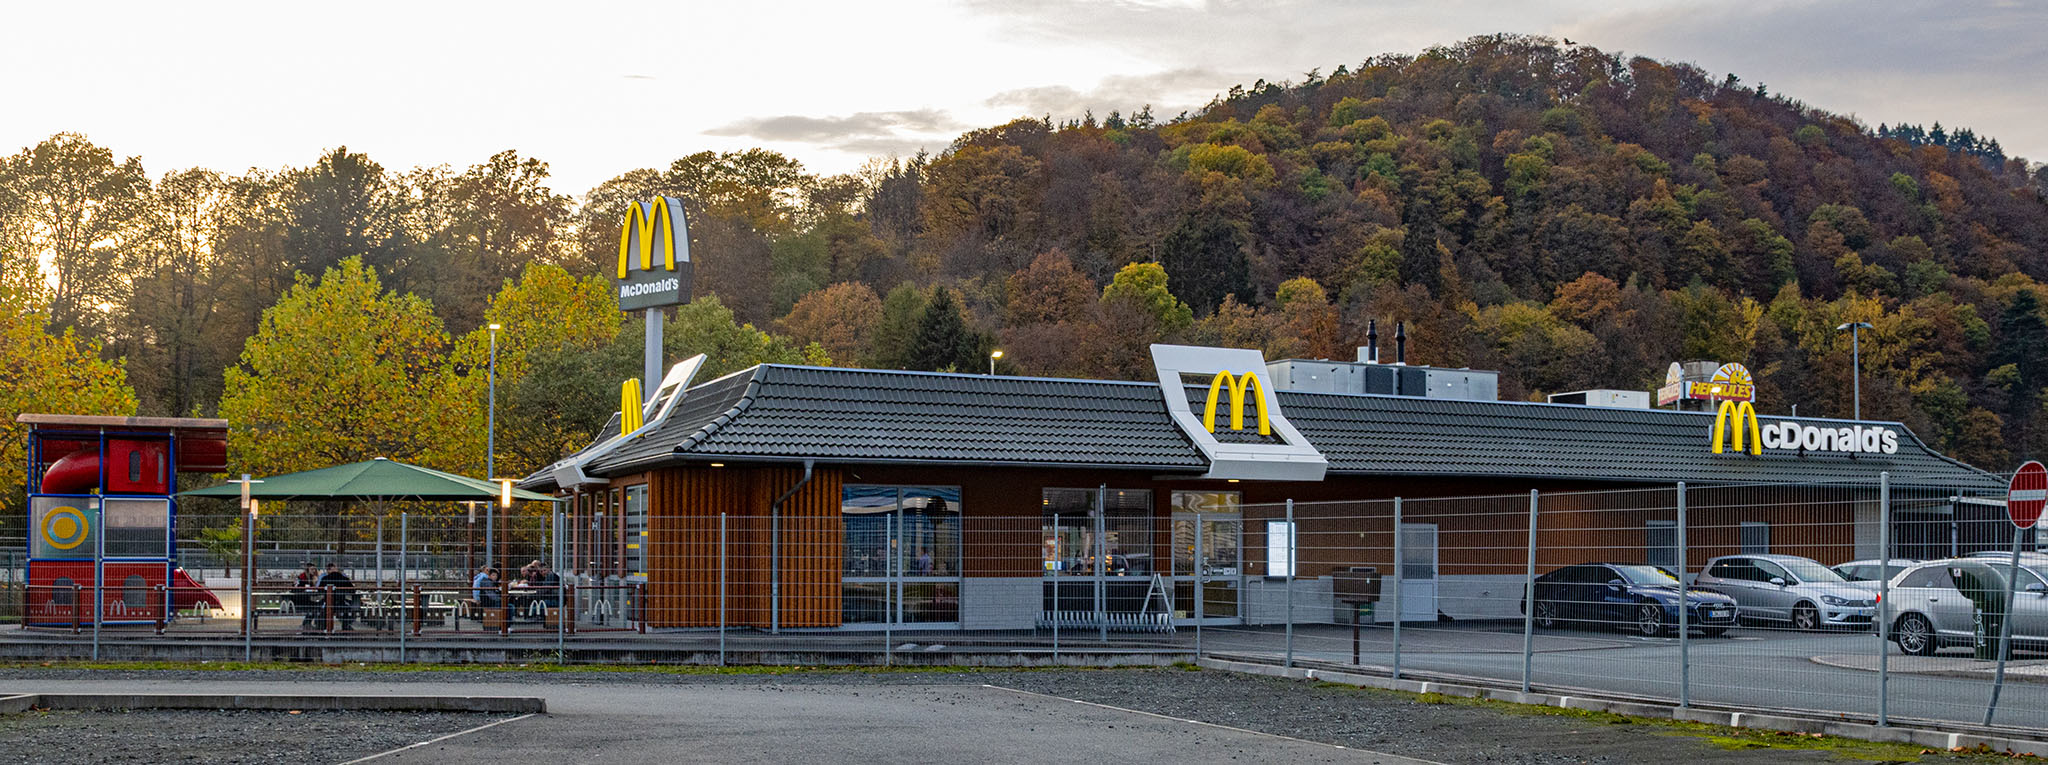 Das McDonald’s-Restaurant in Biedenkopf